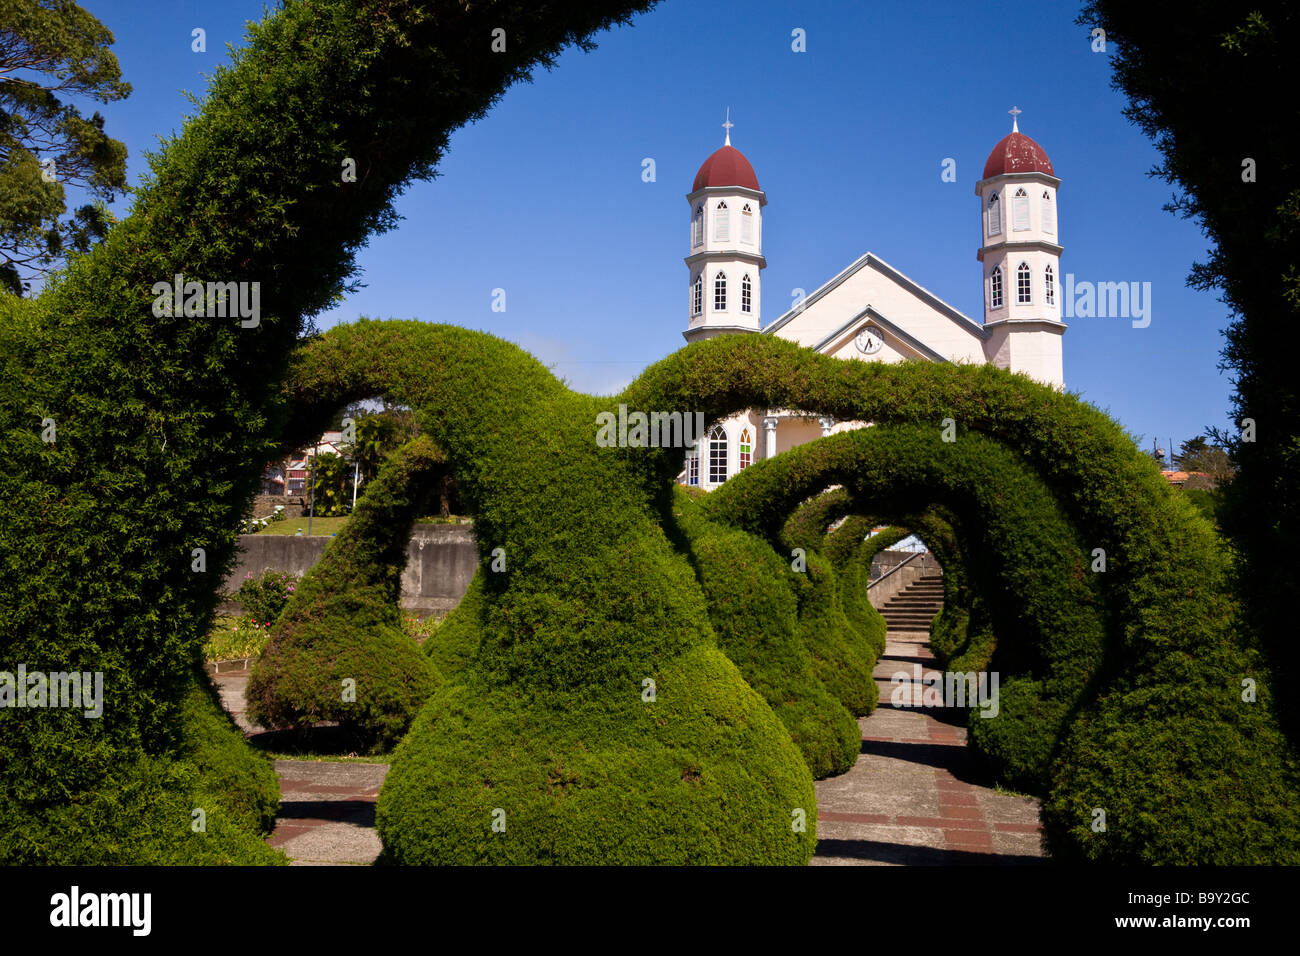 Iglesia de san rafael hi-res stock photography and images - Alamy